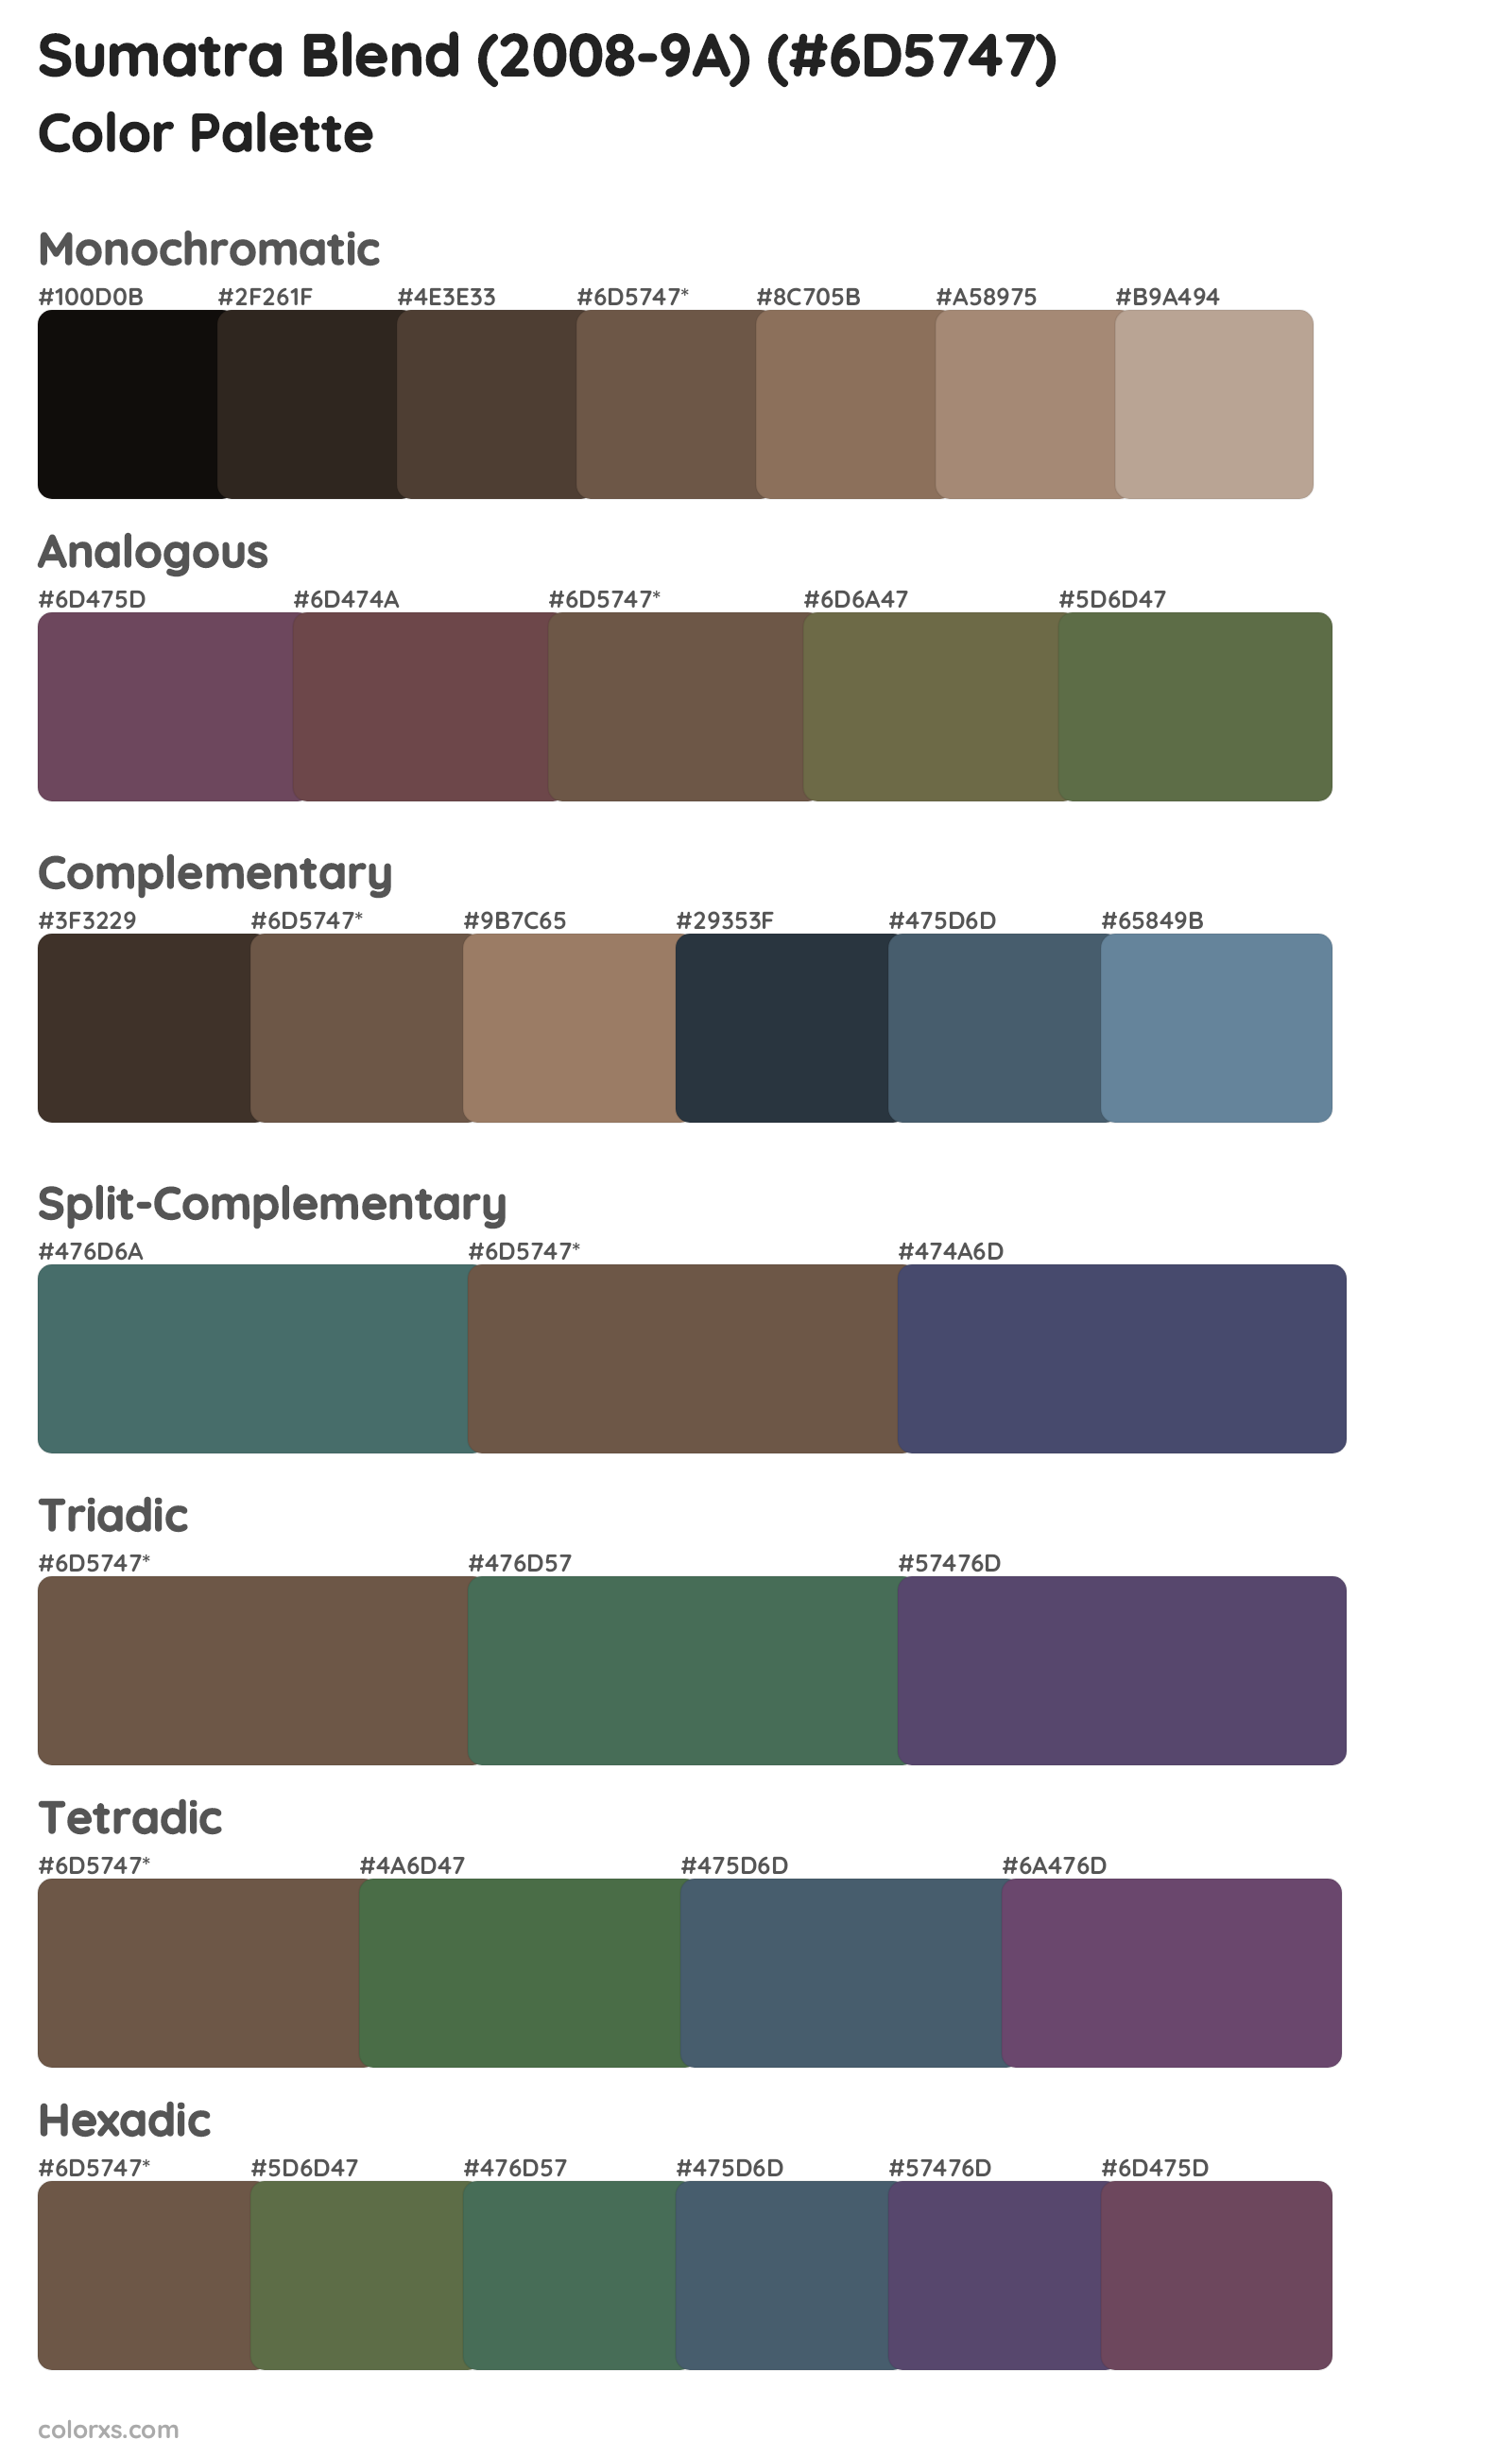 Sumatra Blend (2008-9A) Color Scheme Palettes